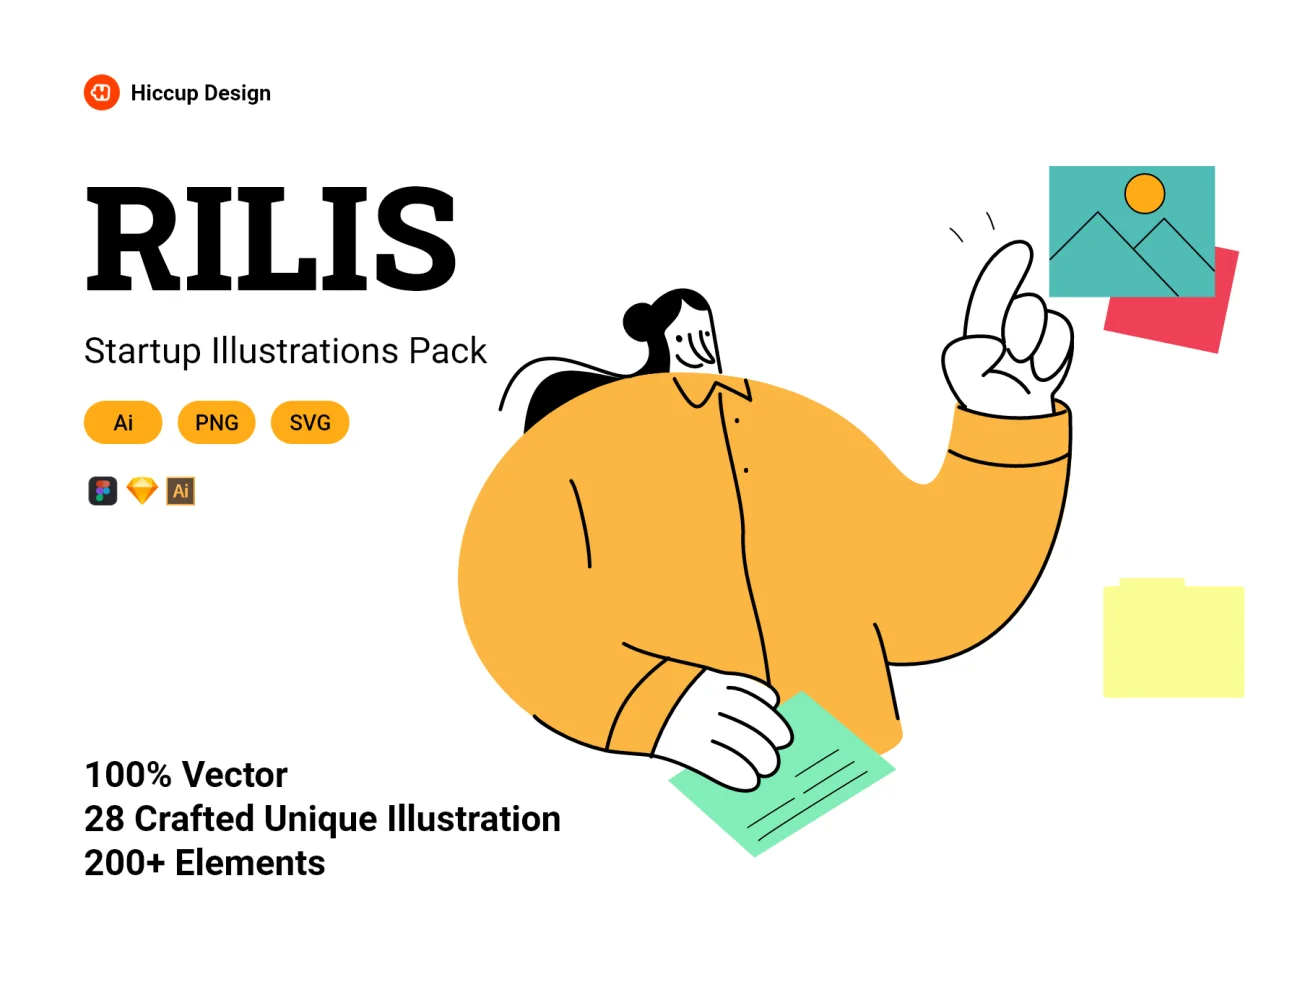 Rilis-Startup Illustrations Pack 矢量别致趣味启动插图包-UI/UX、插画-到位啦UI